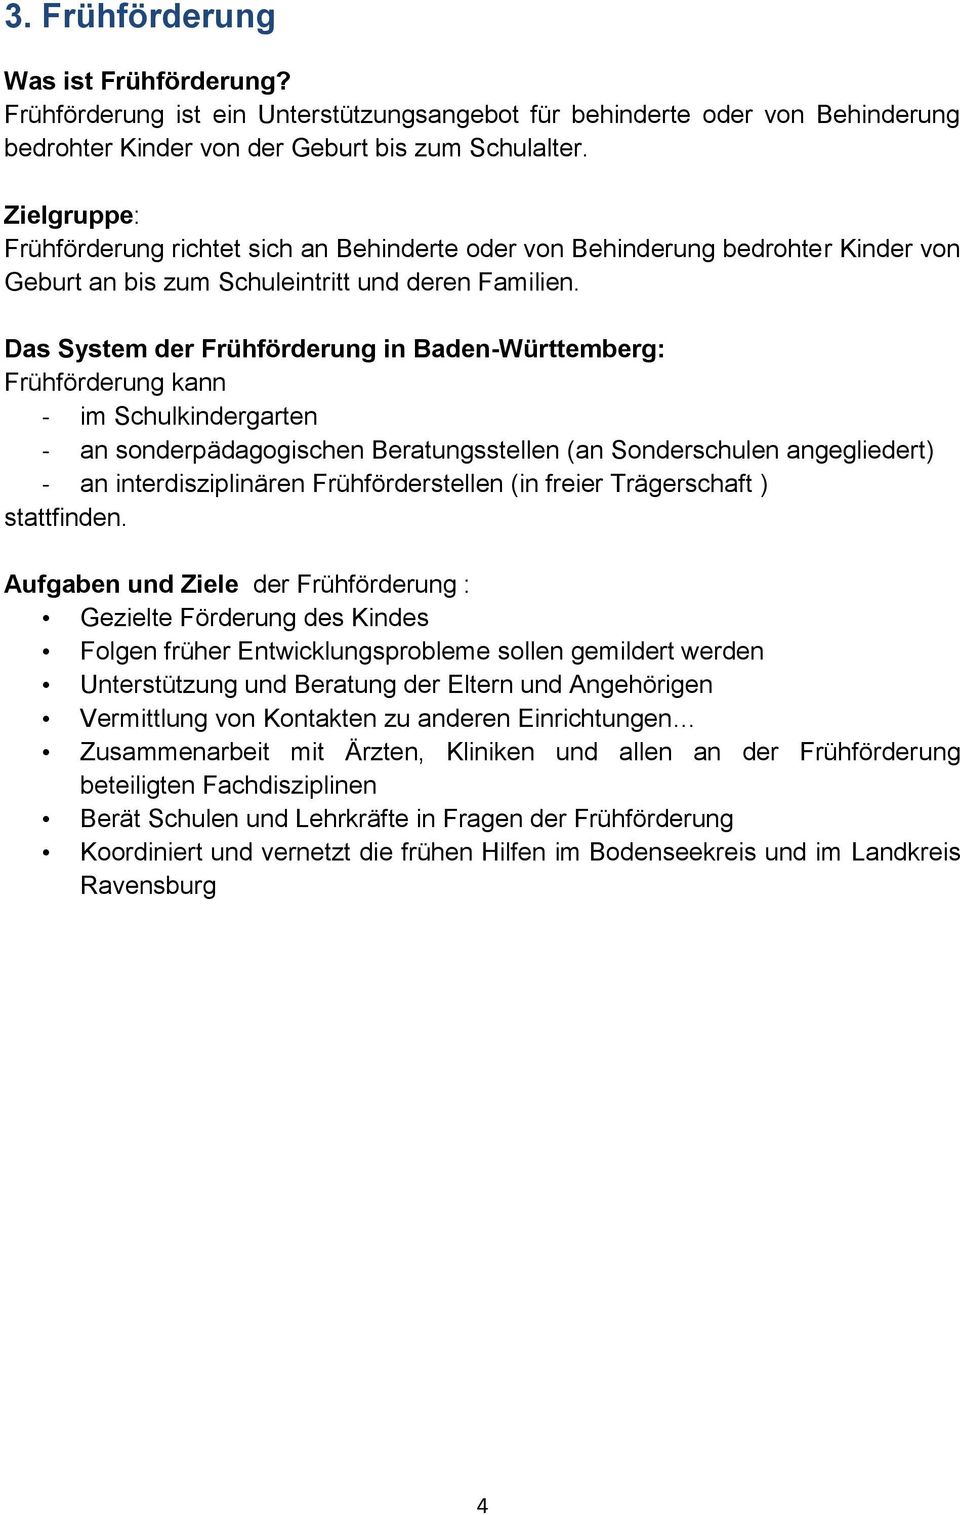 Das System der Frühförderung in Baden-Württemberg: Frühförderung kann - im Schulkindergarten - an sonderpädagogischen Beratungsstellen (an Sonderschulen angegliedert) - an interdisziplinären